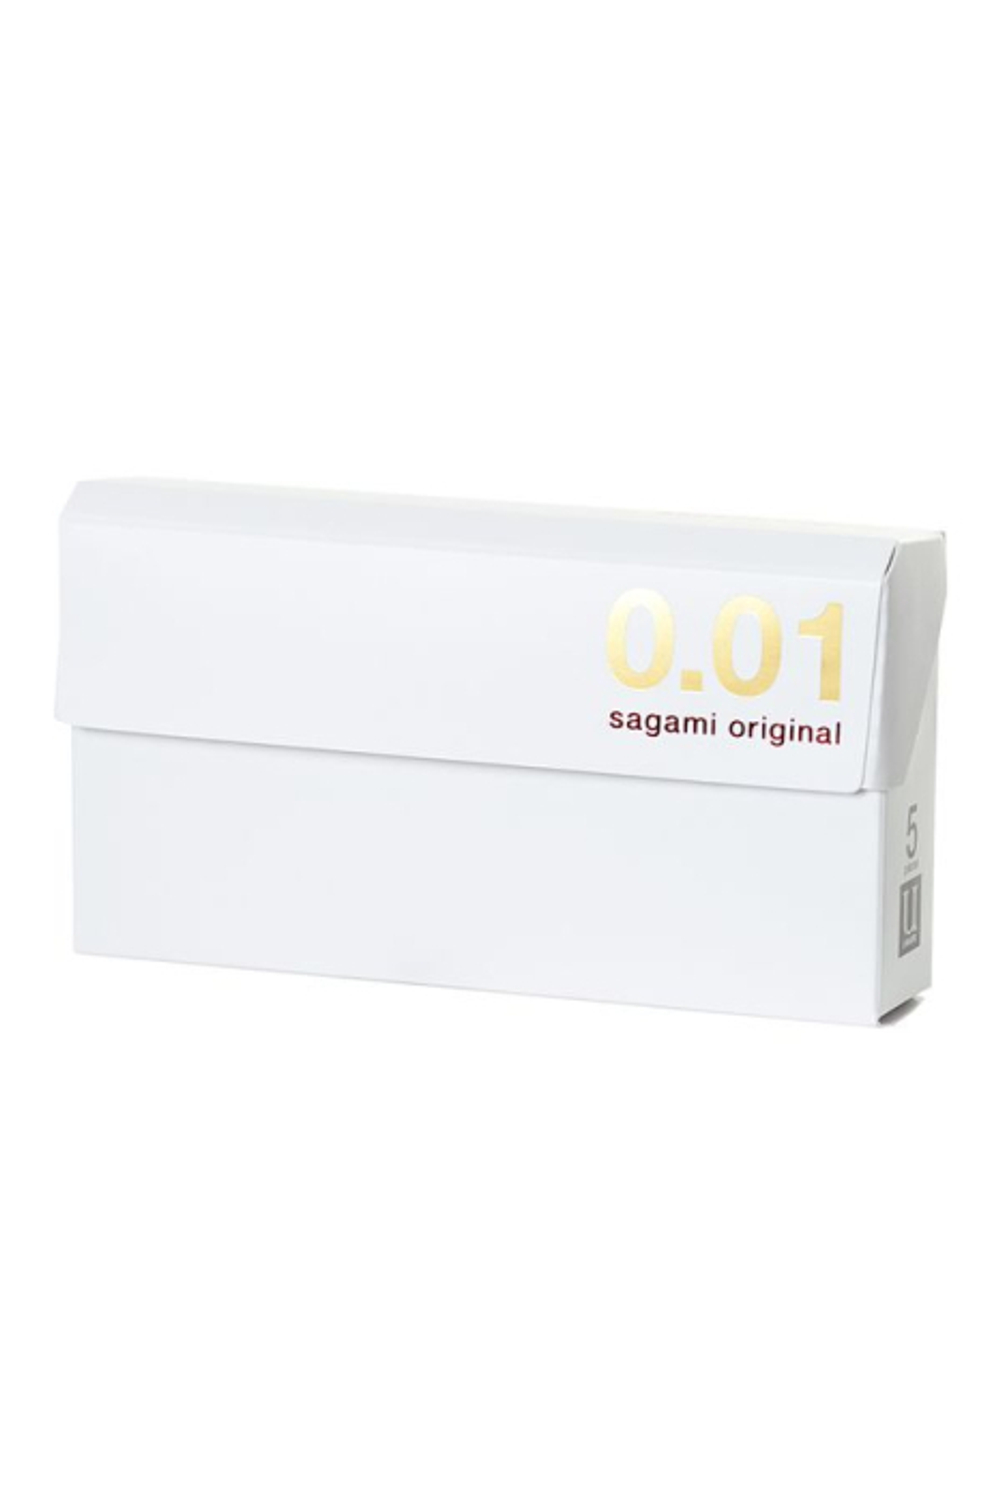 Презервативы SAGAMI Original 001 полиуретановые 5шт.